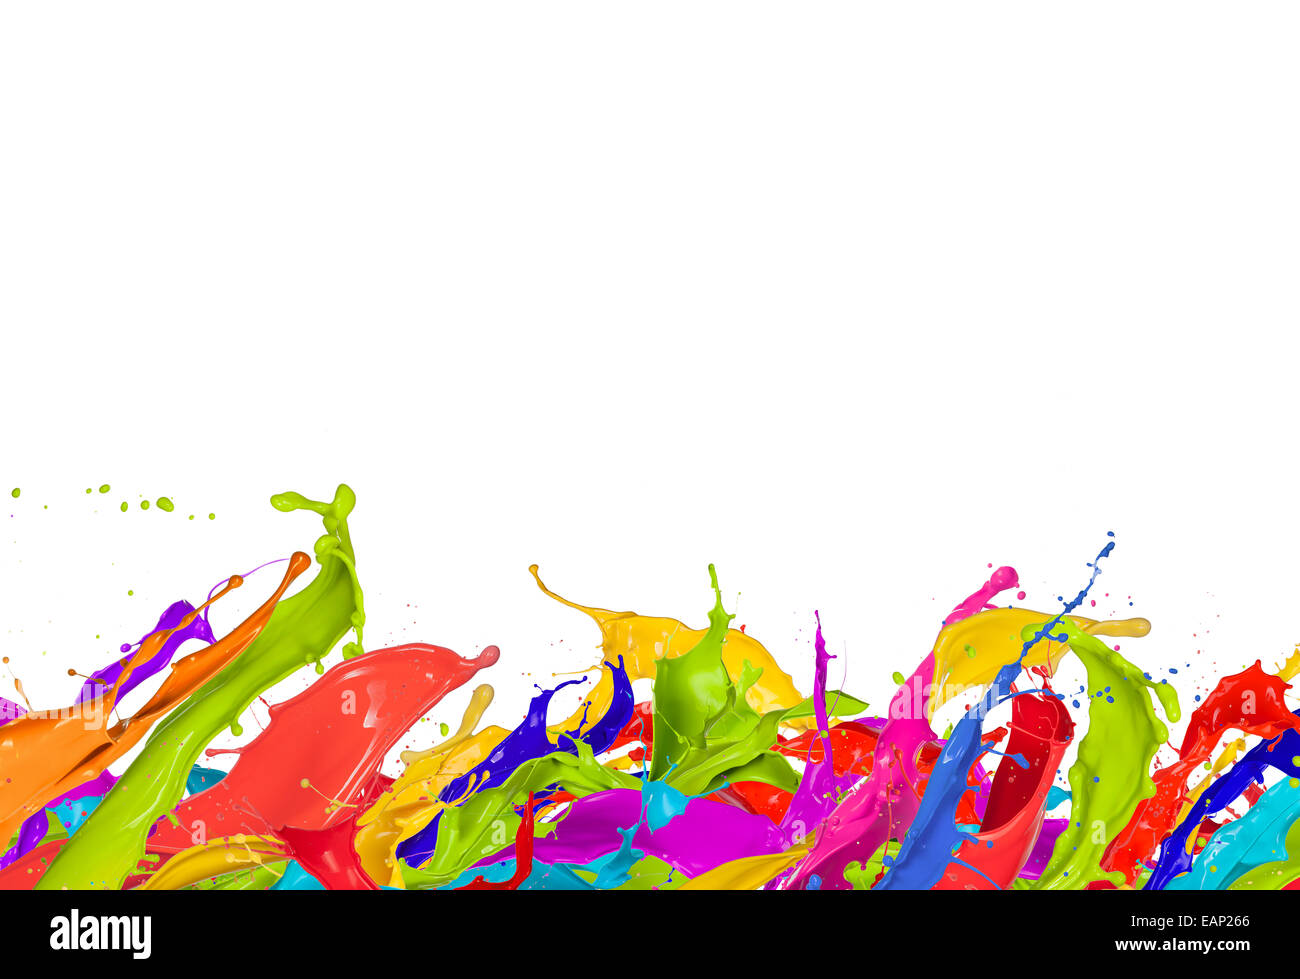 Bunte Farbtupfer in abstrakter Form, isoliert auf weißem Hintergrund Stockfoto